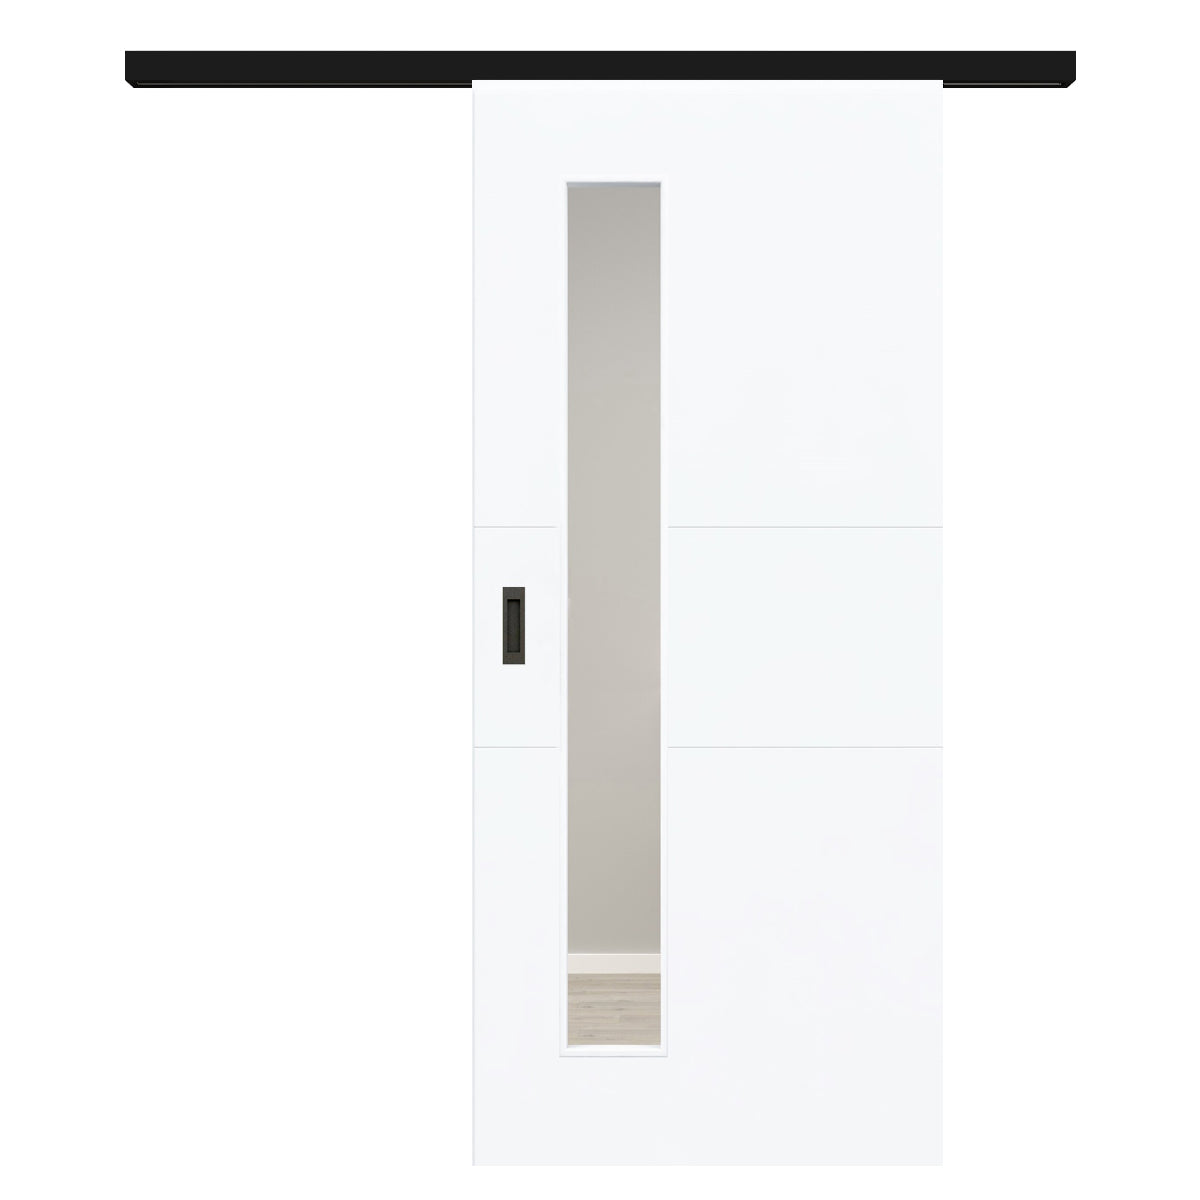 Schiebetür für Set mit schwarzem Laufkasten mit Lichtausschnitt brillant-weiß 2 Rillen quer - Modell Designtür Q23LAS